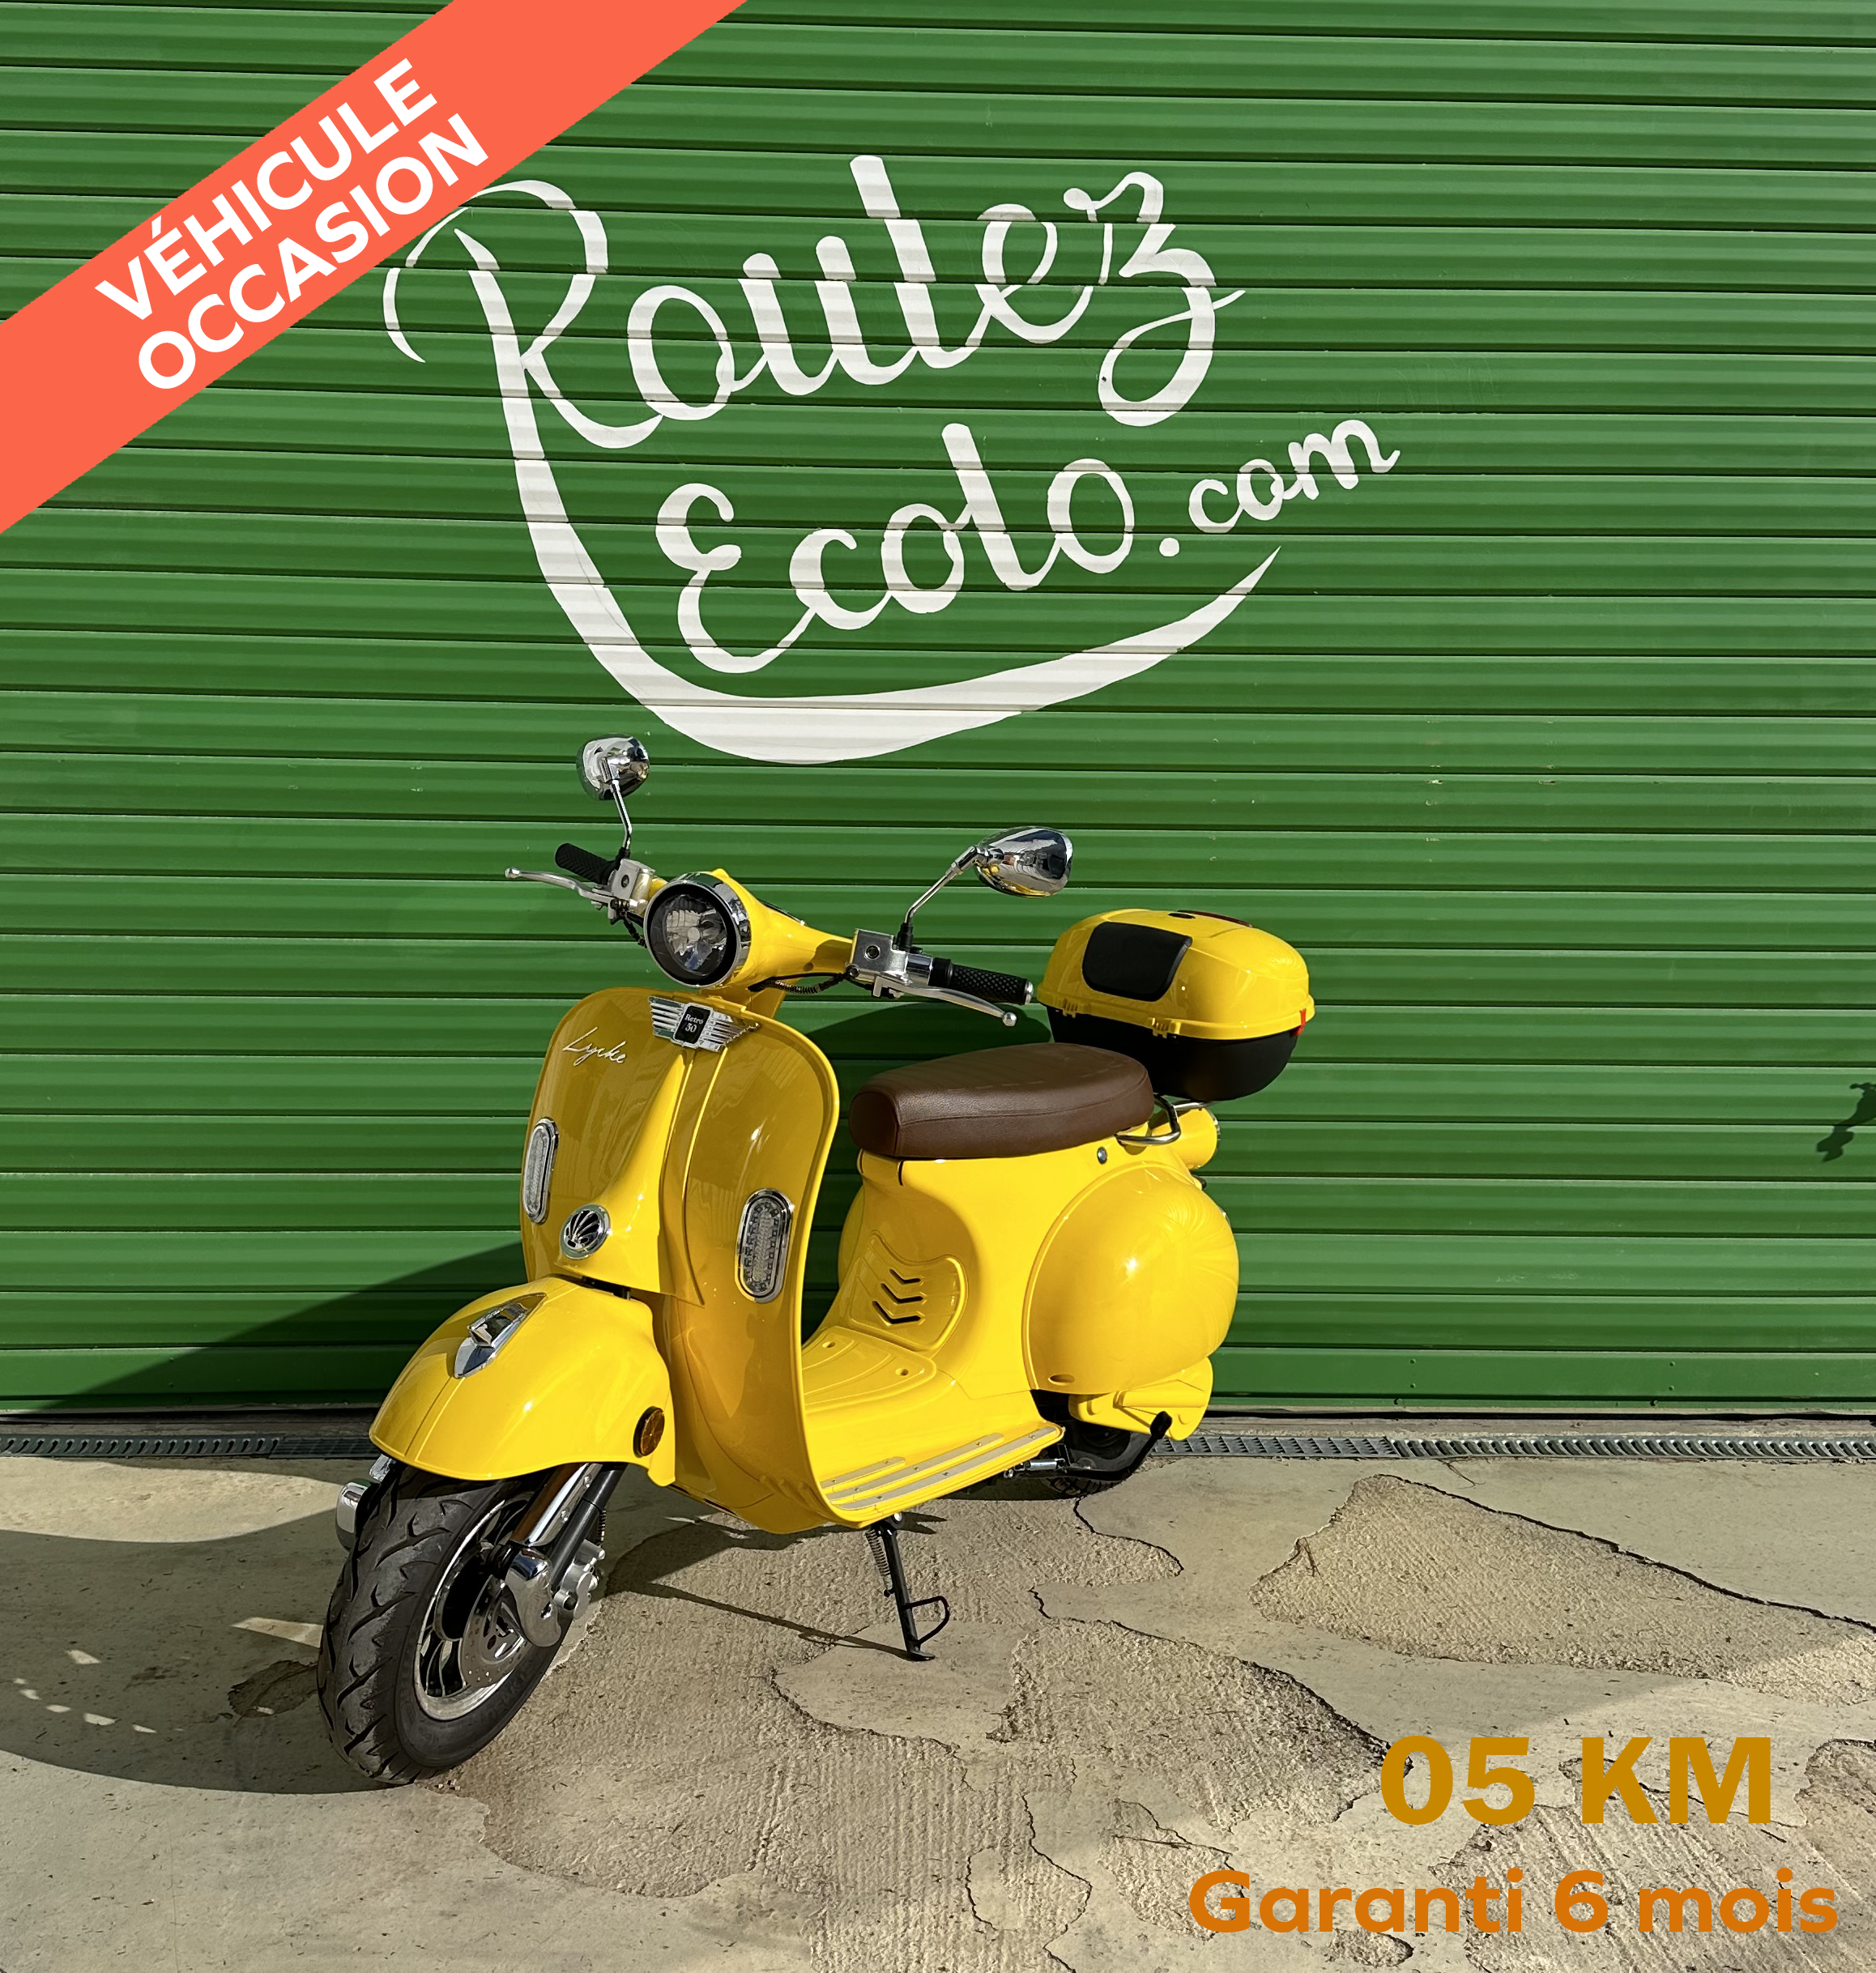 Scooter électrique Retro50 -Occasion 05 km